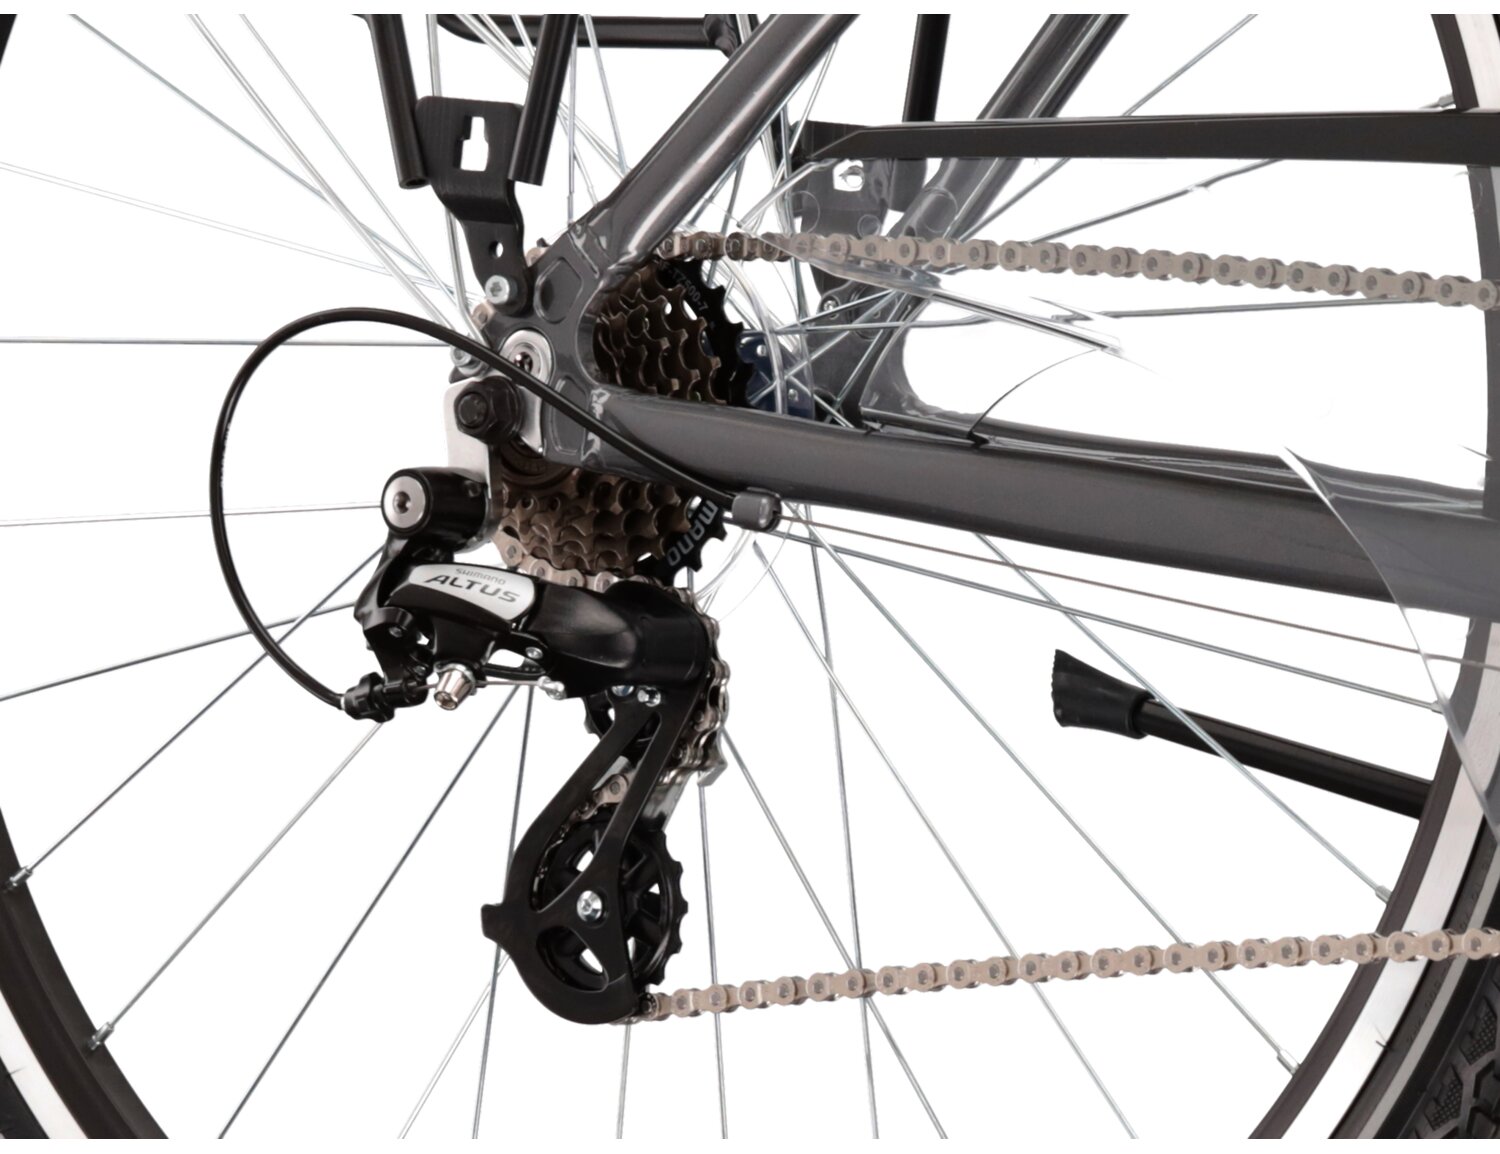  Tylna siedmiobiegowa przerzutka Shimano Altus M310 oraz hamulce v-brake w rowerze trekkingowym KROSS Trans 2.0 